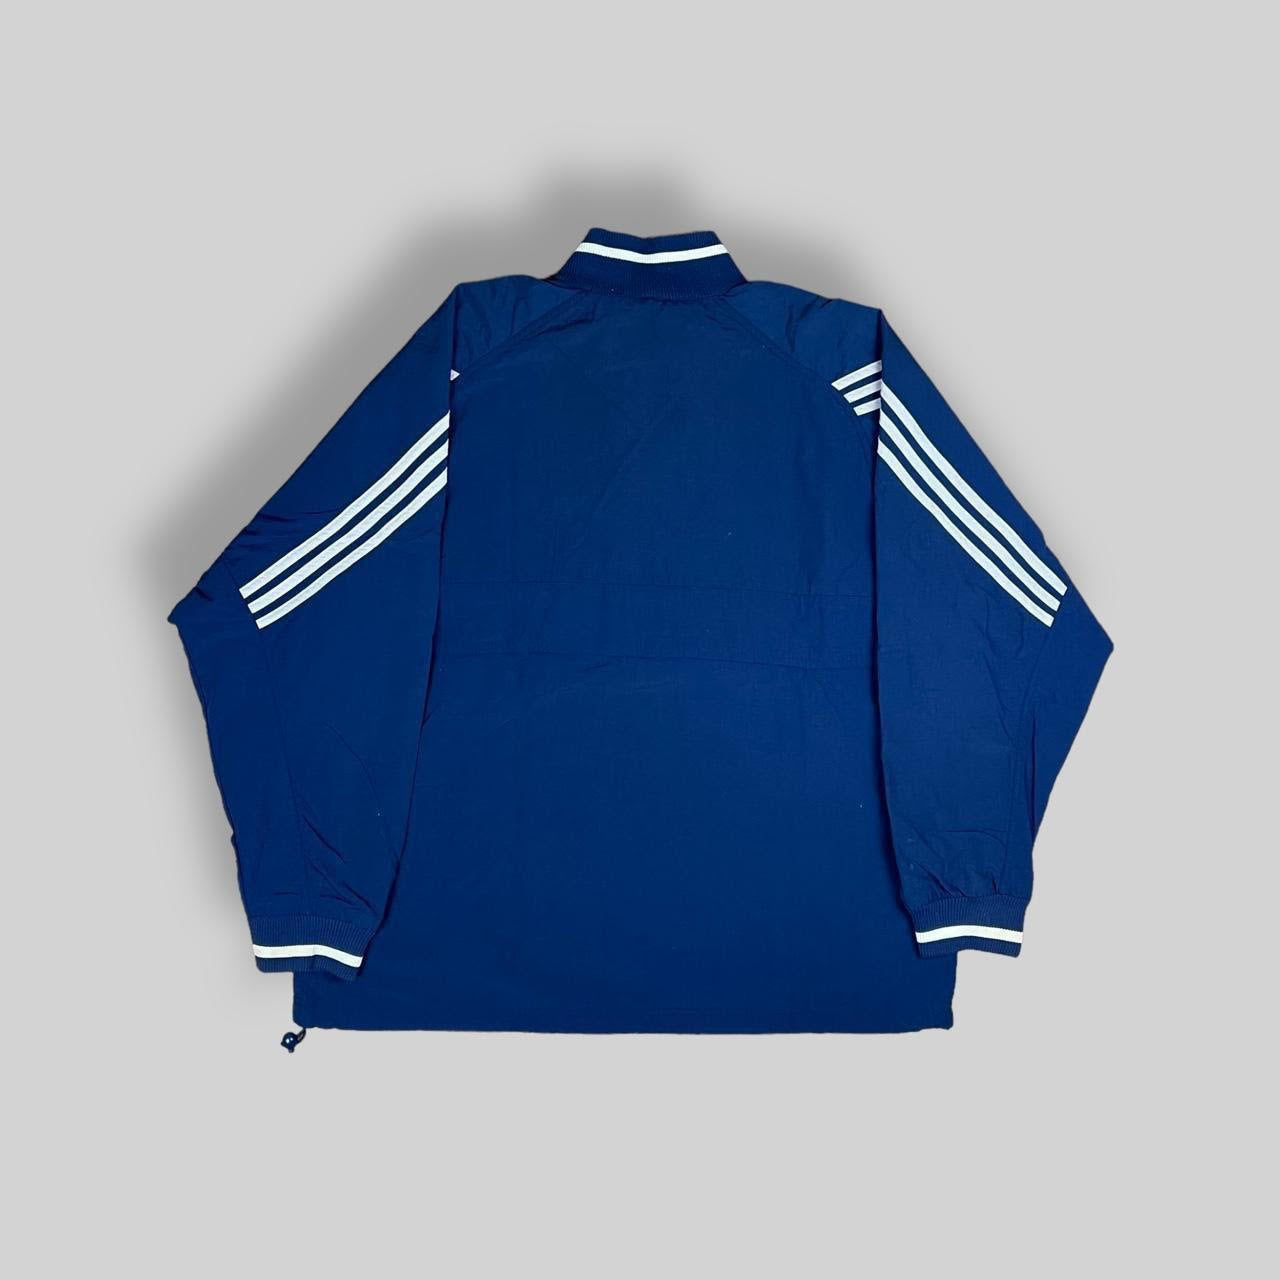 Vintage Adidas Pullover Half Zip Jacket (XL)